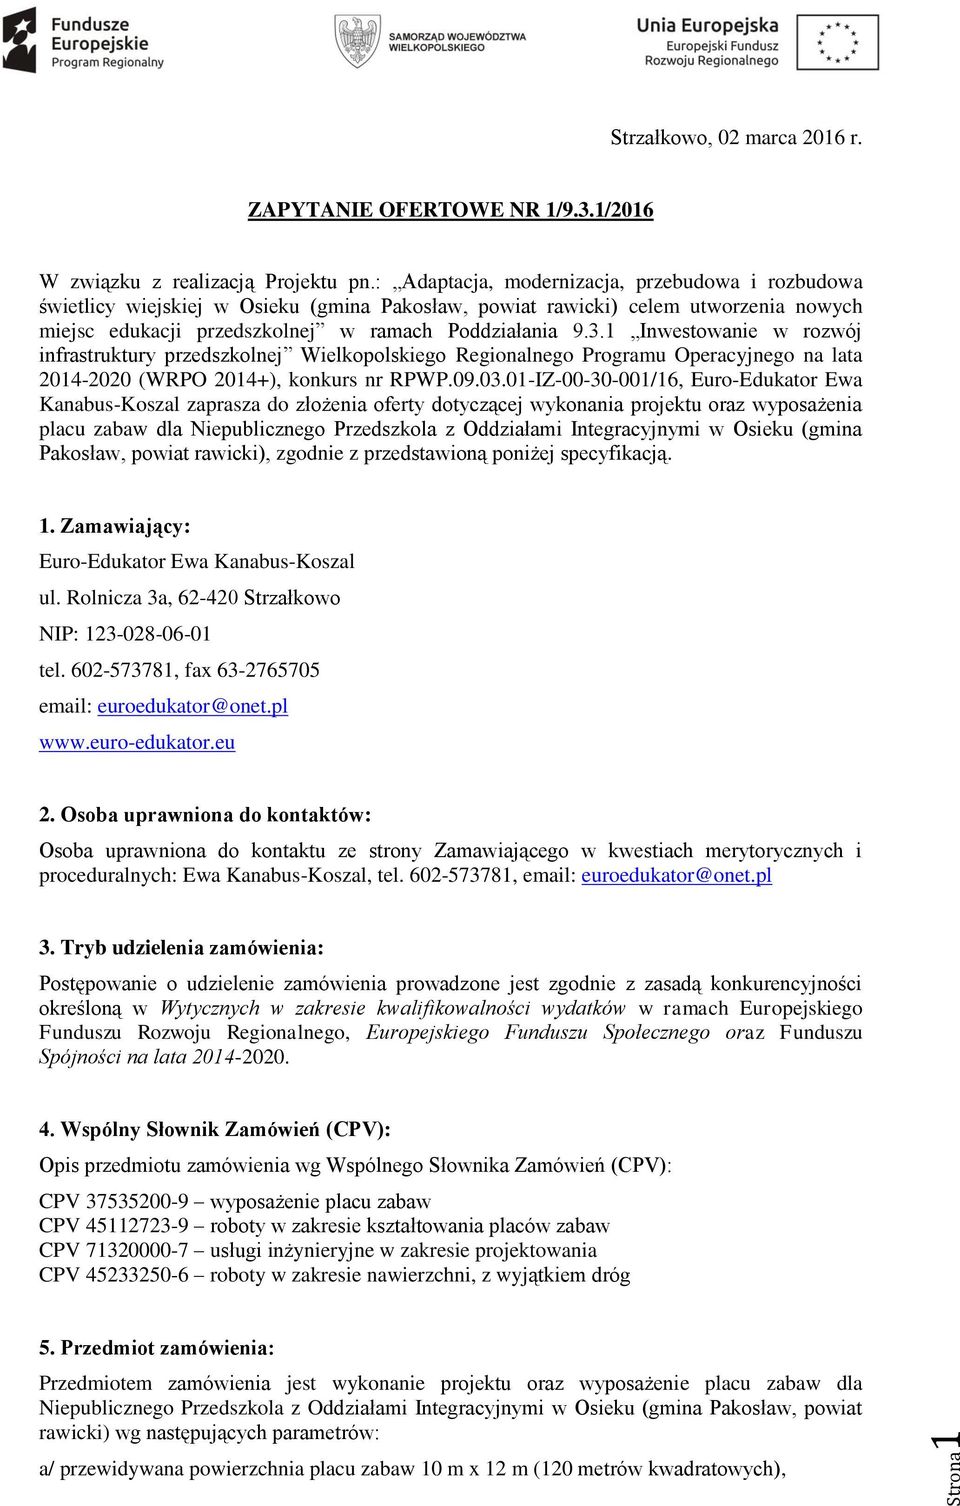 1 Inwestowanie w rozwój infrastruktury przedszkolnej Wielkopolskiego Regionalnego Programu Operacyjnego na lata 2014-2020 (WRPO 2014+), konkurs nr RPWP.09.03.